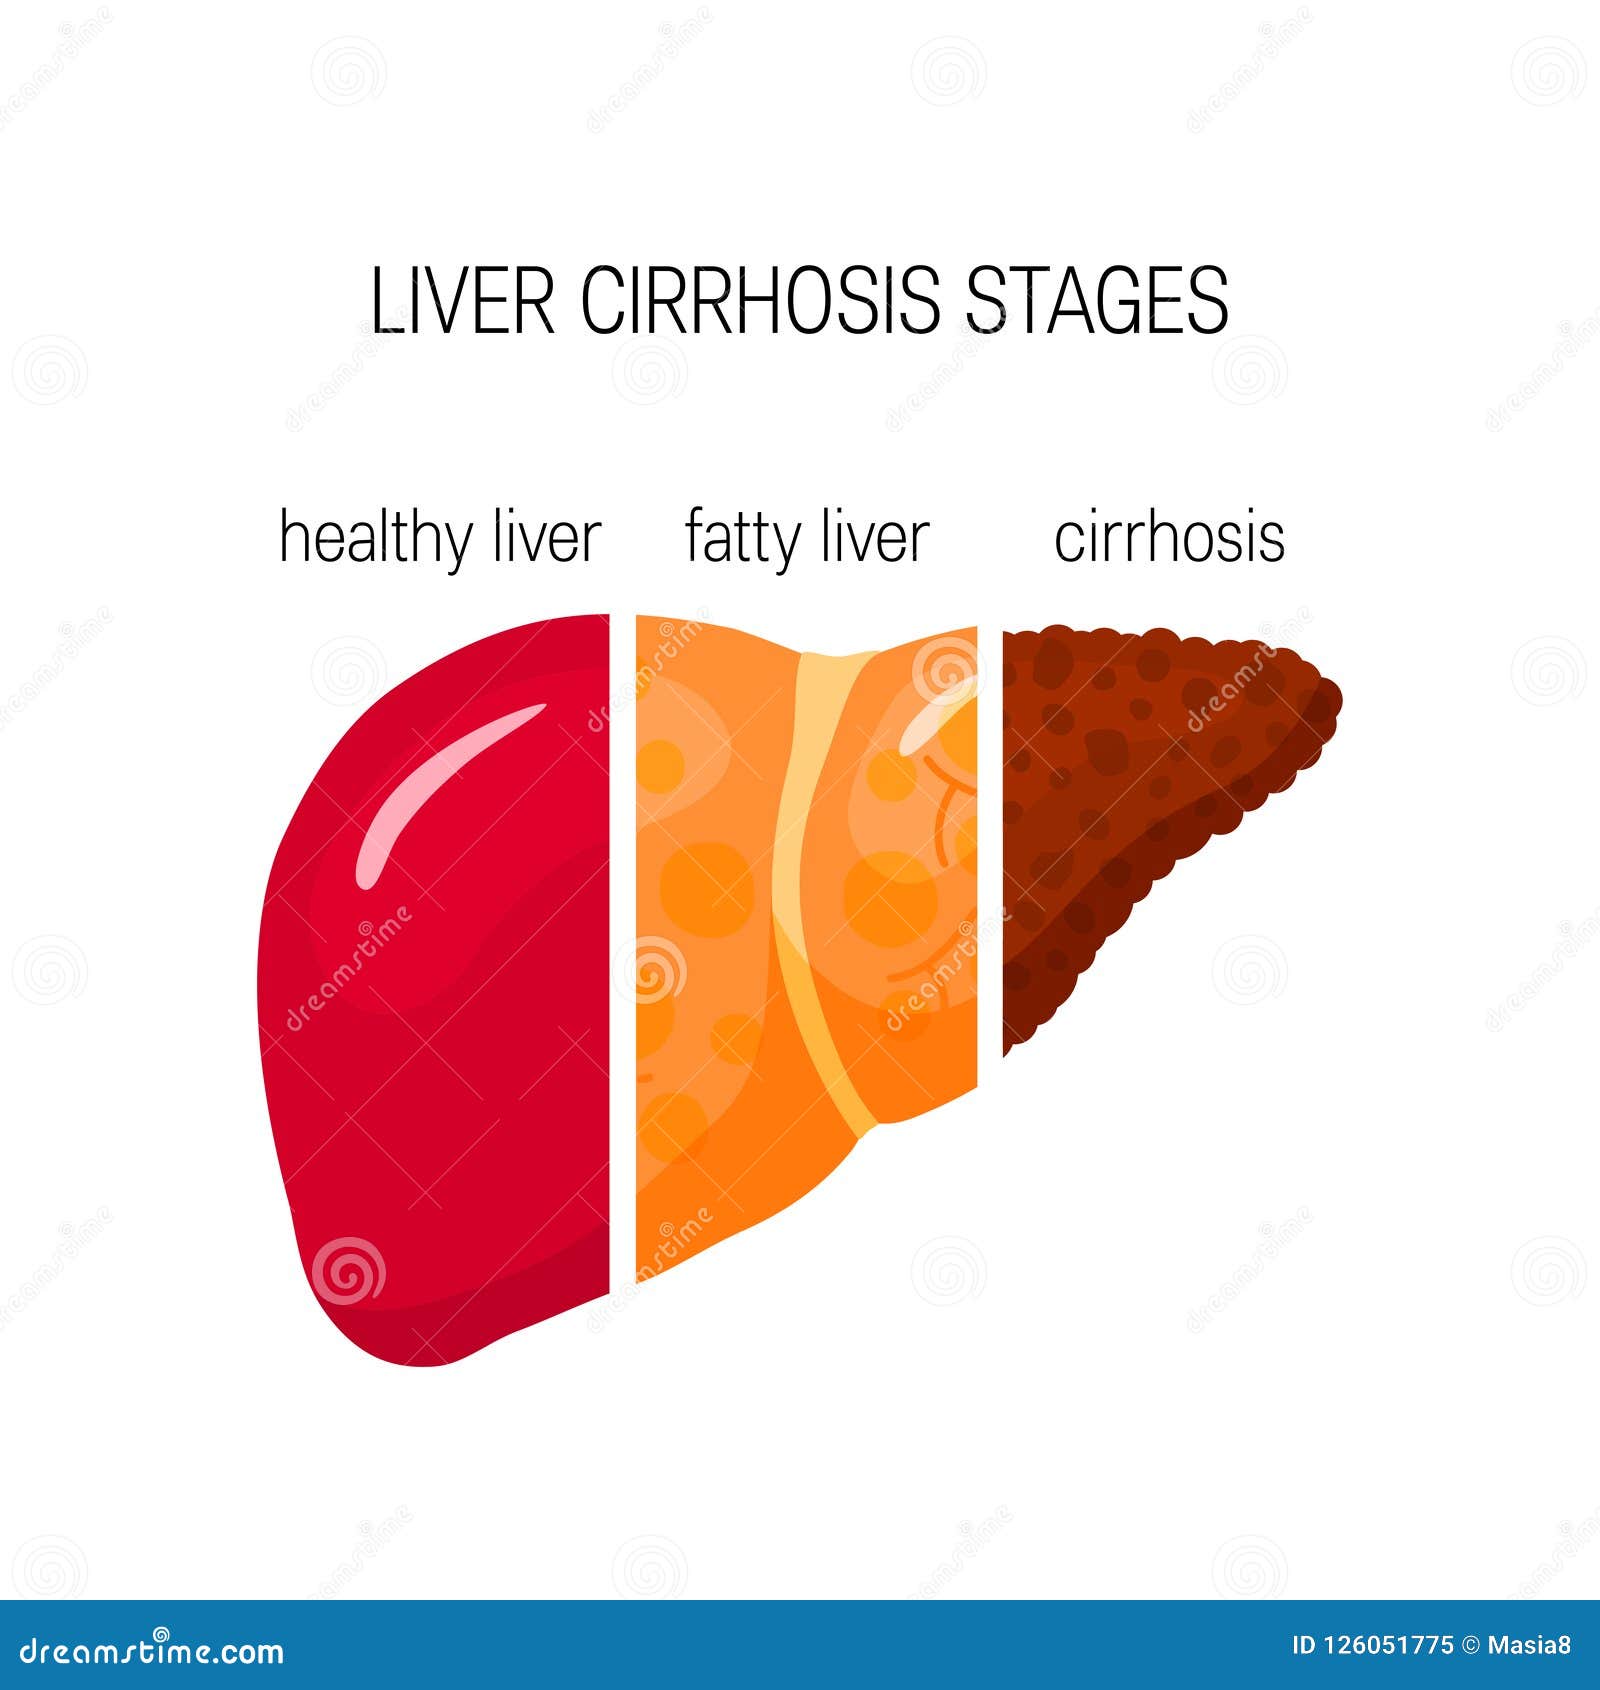 liver cirrhosis concept